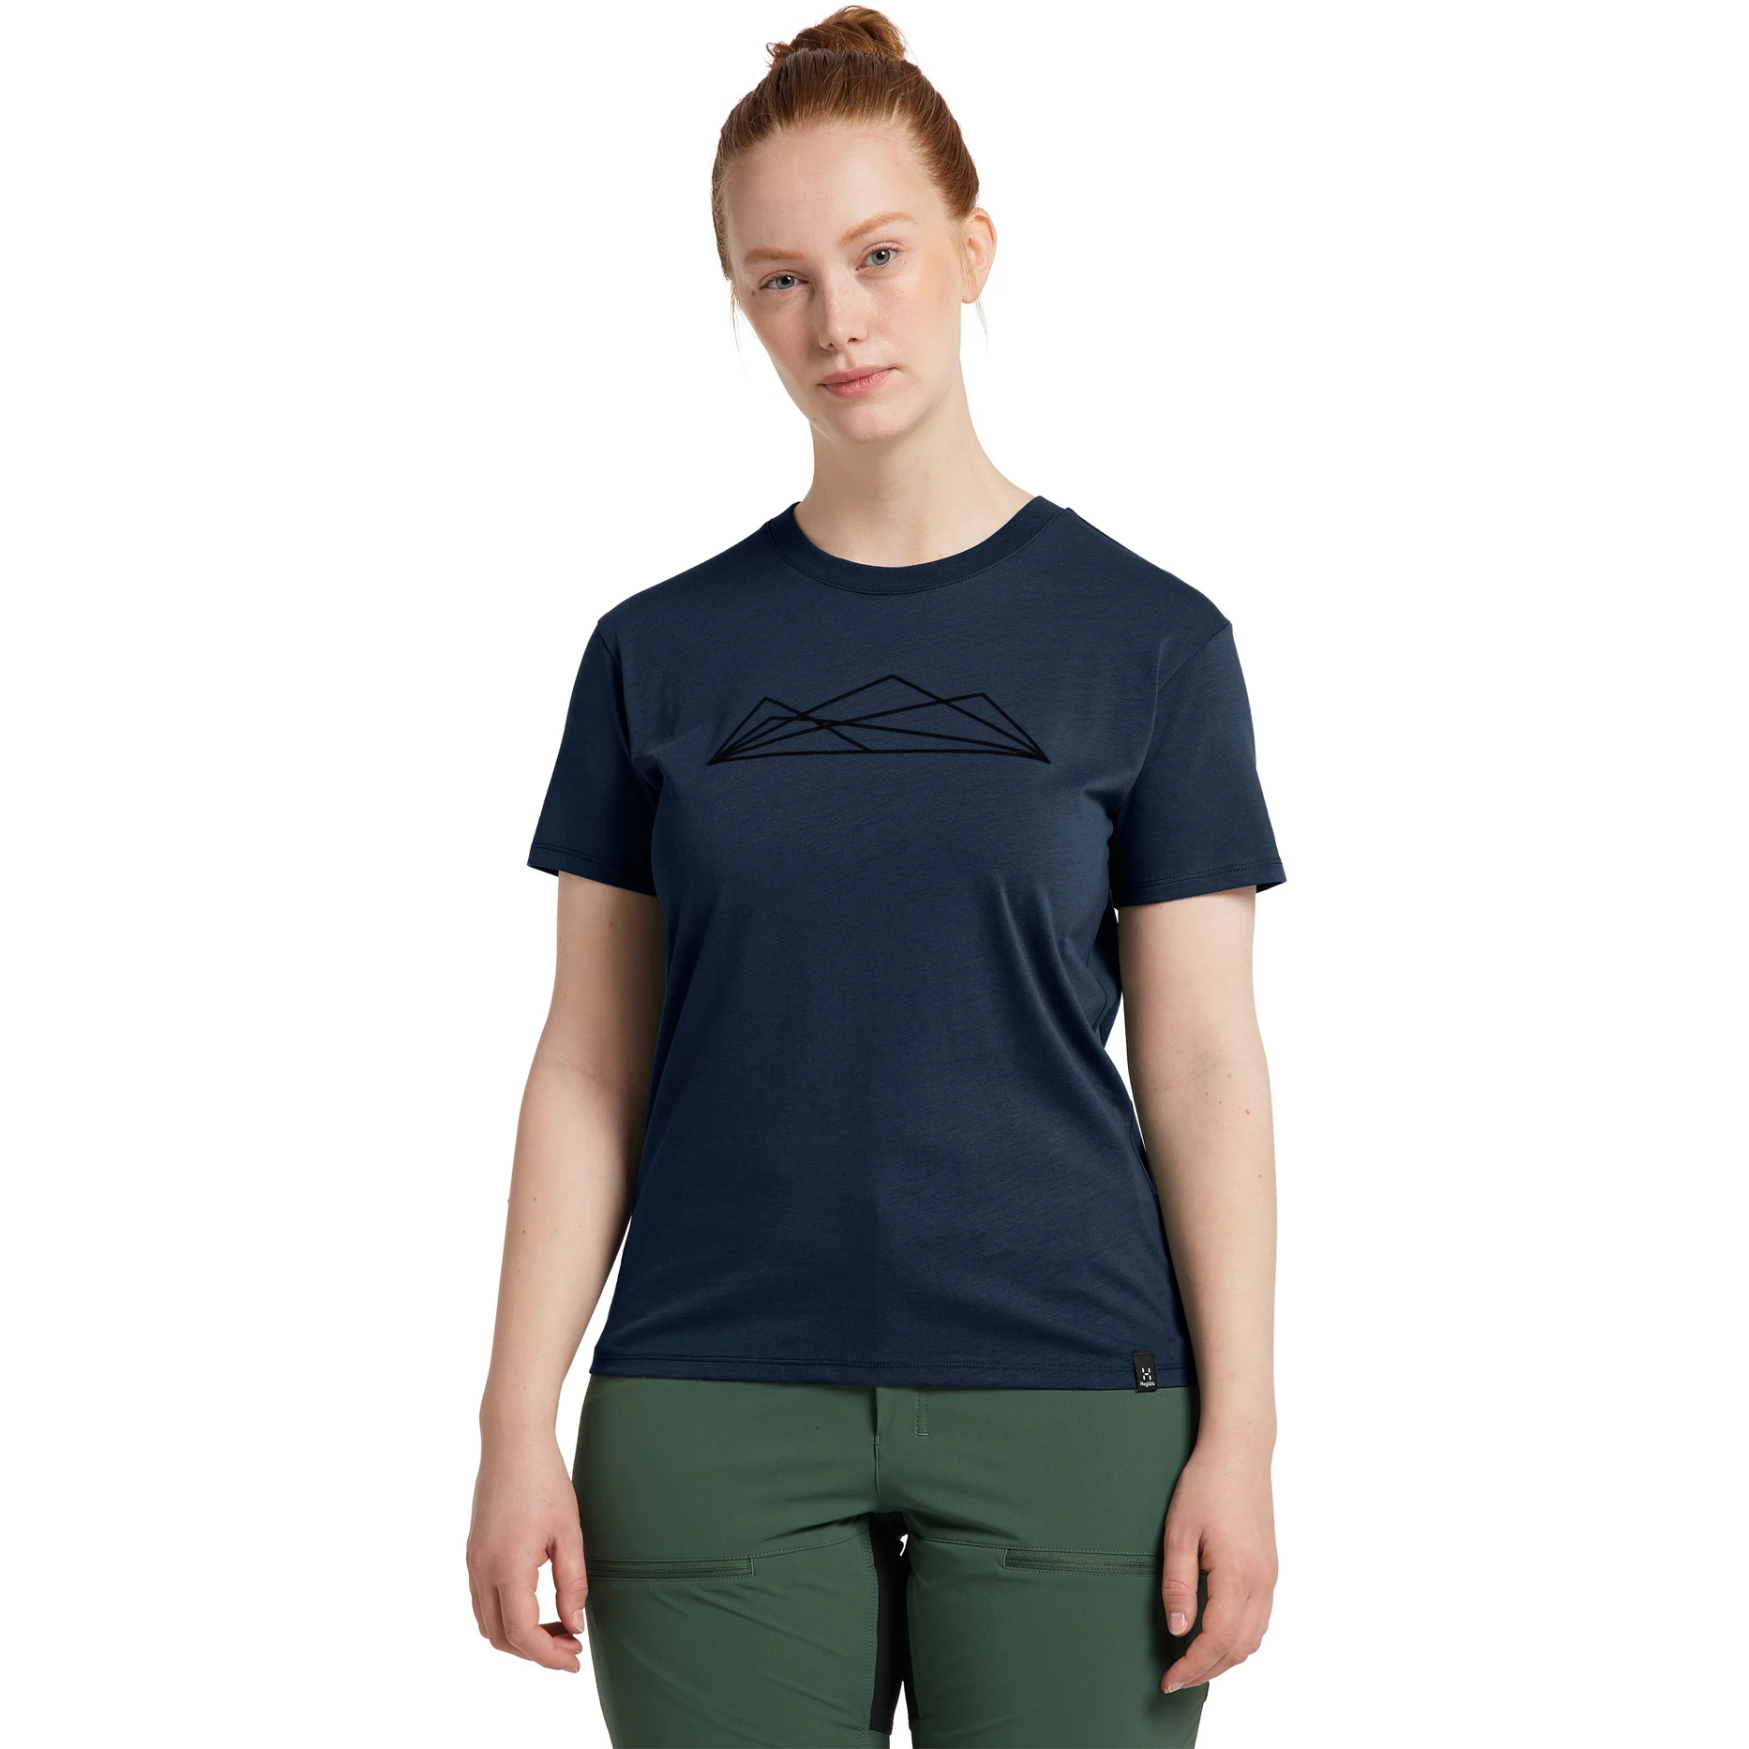 Produktbild von Haglöfs Camp T-Shirt Damen - tarn blue graphic 4V3